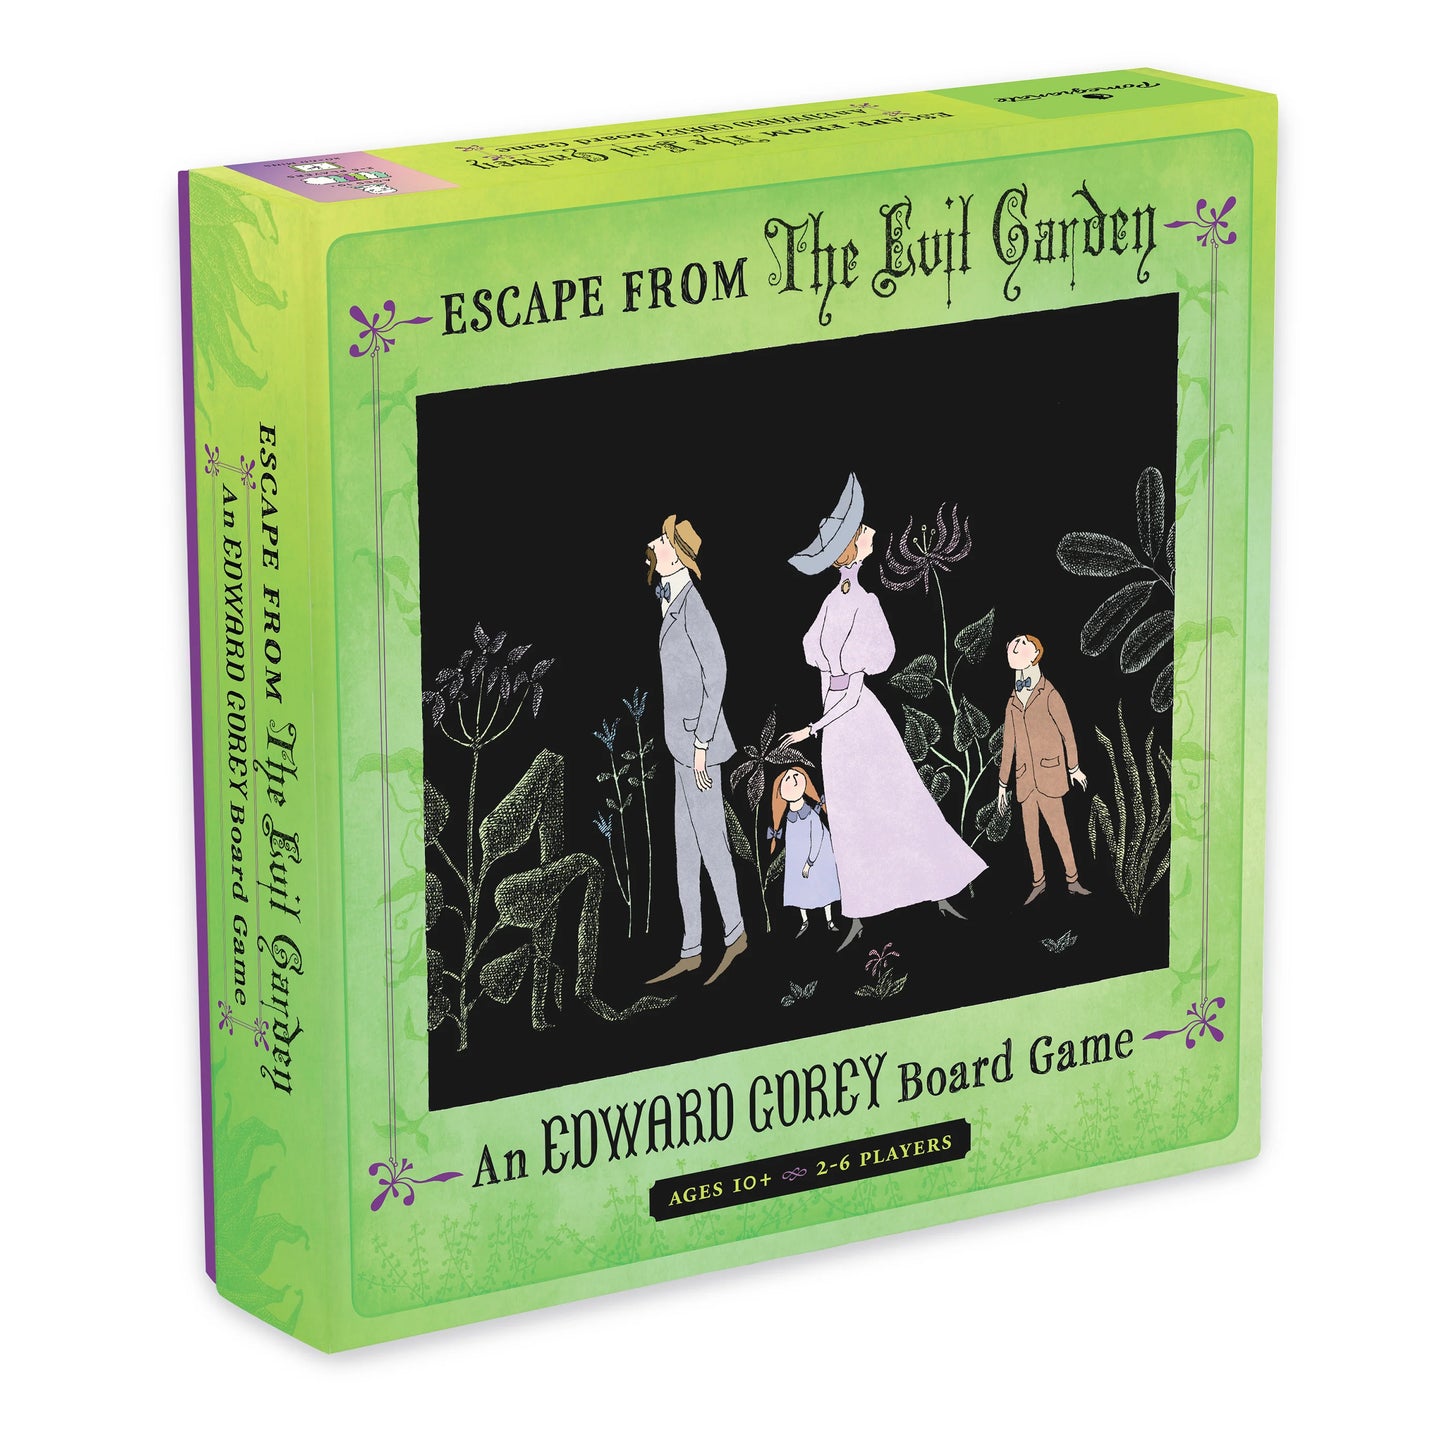 Escape from The Evil Garden: An Edward Gorey Board Game